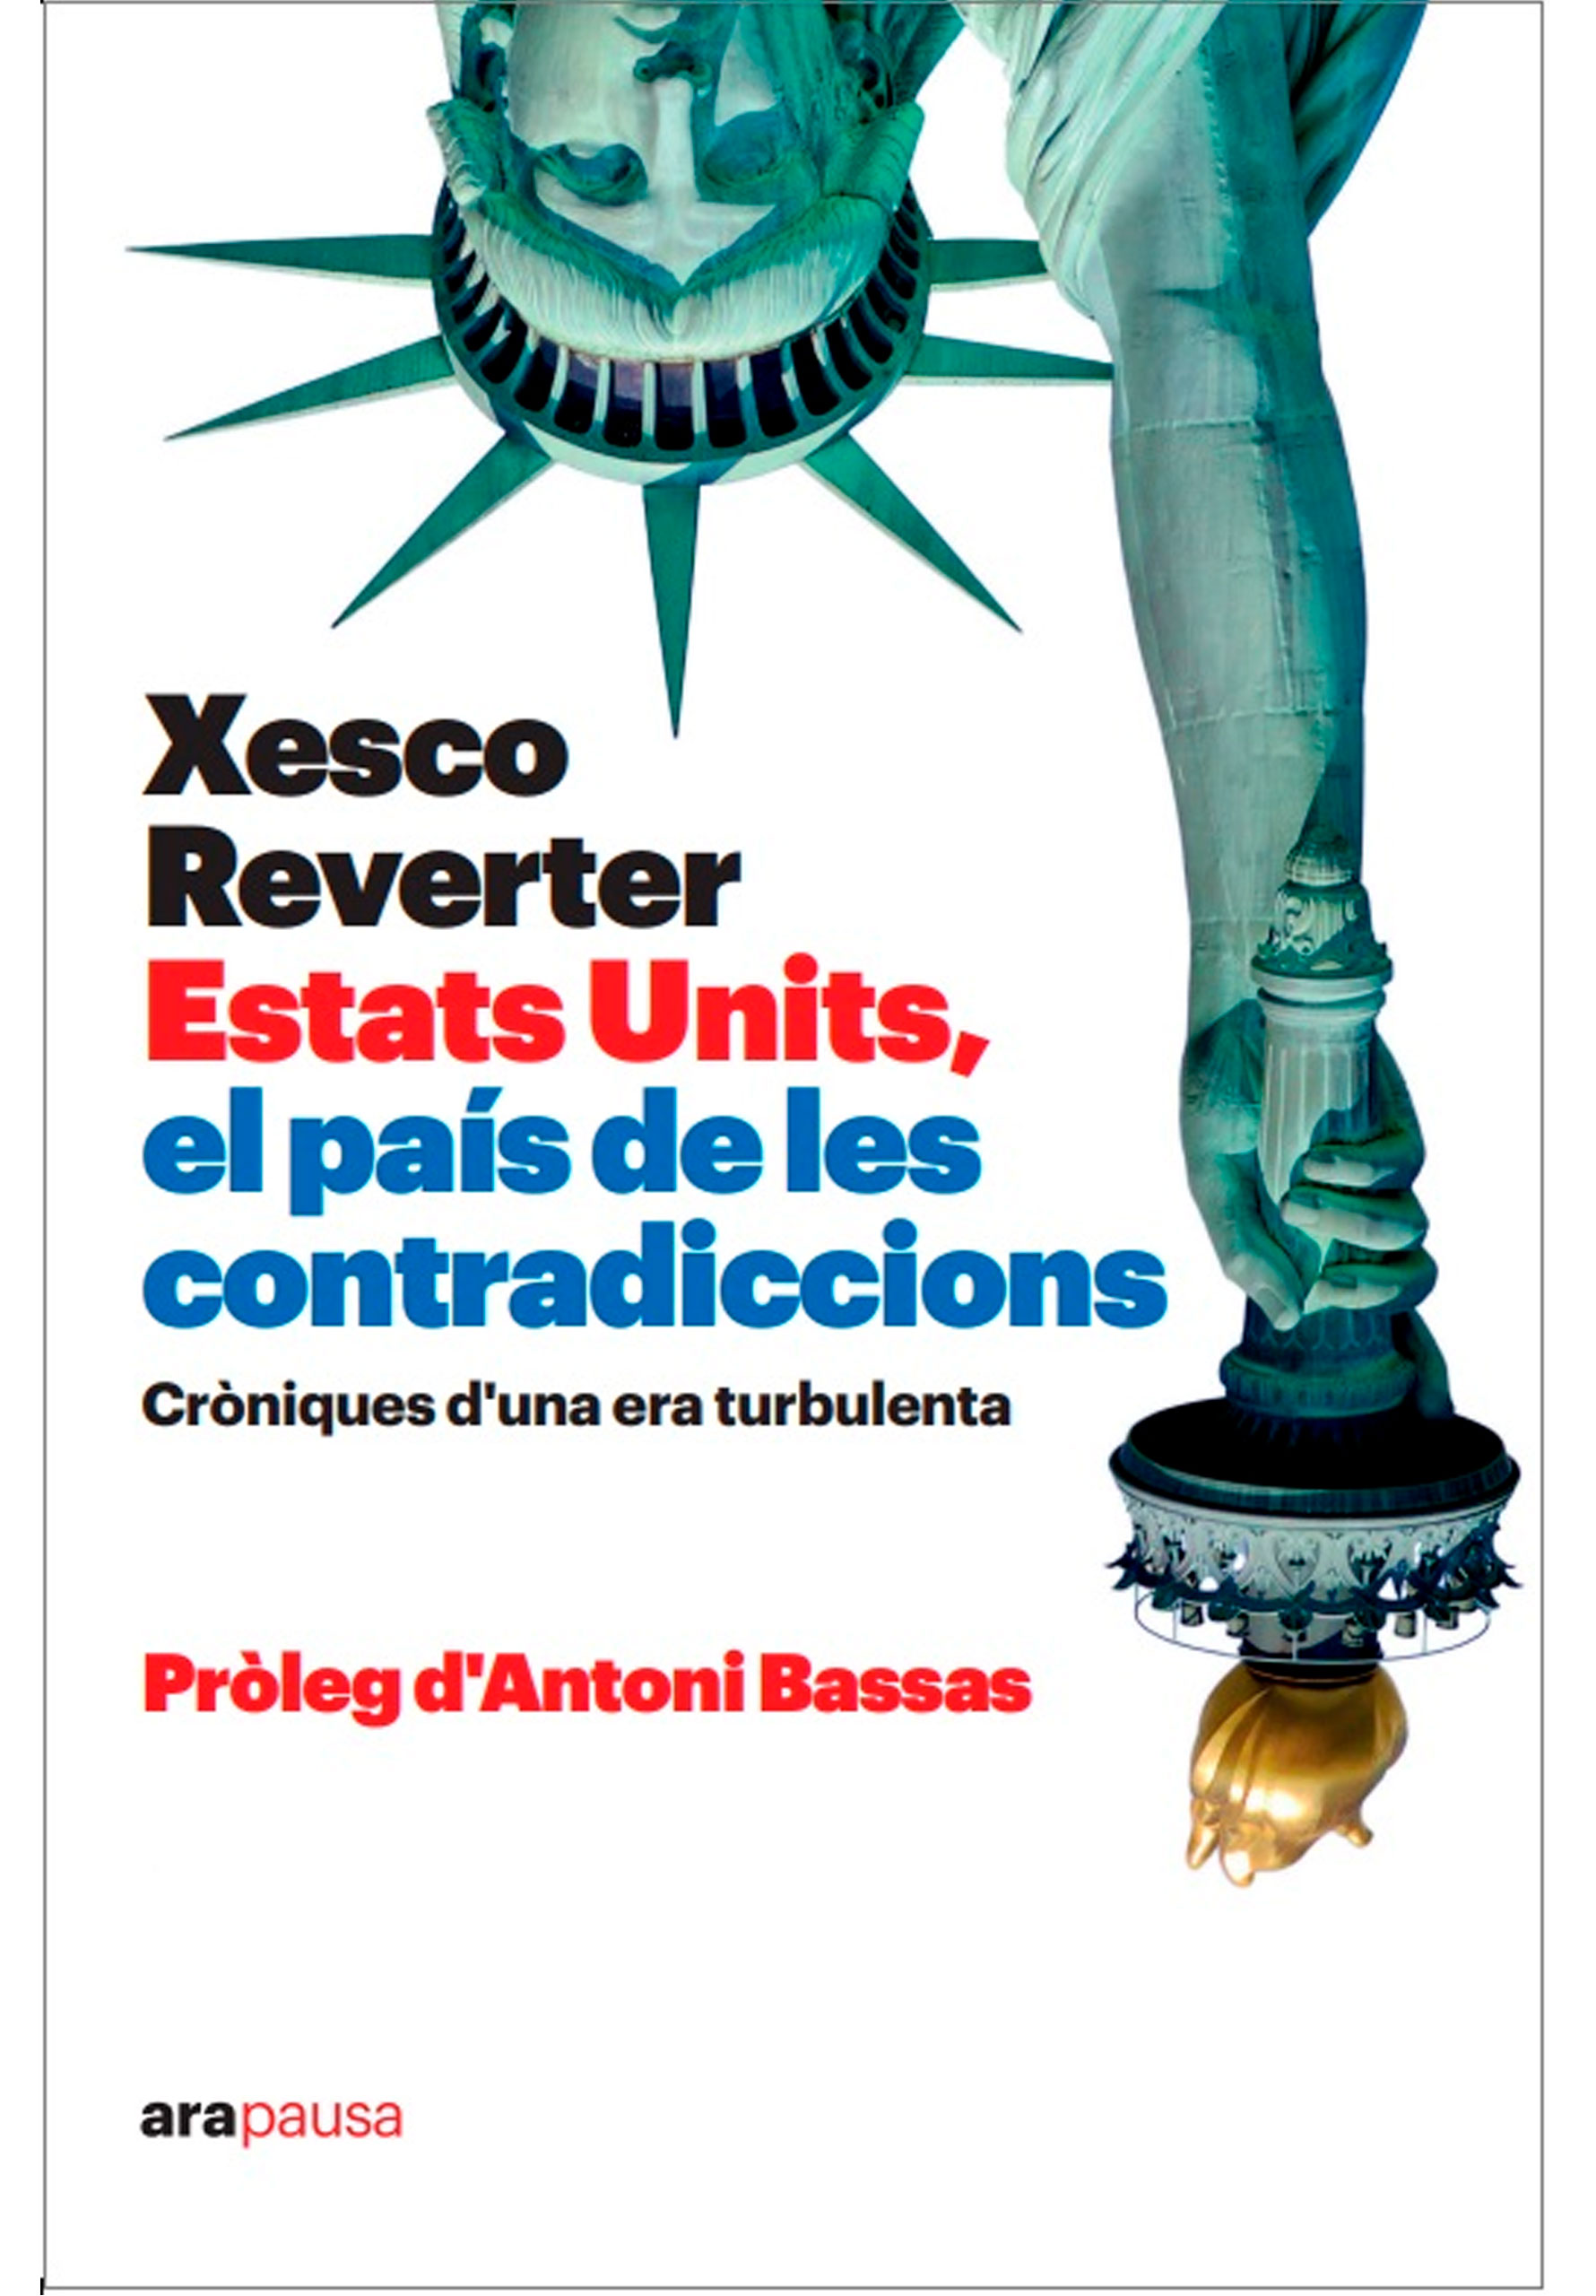 Xesco Reverter - El país de les contradiccions